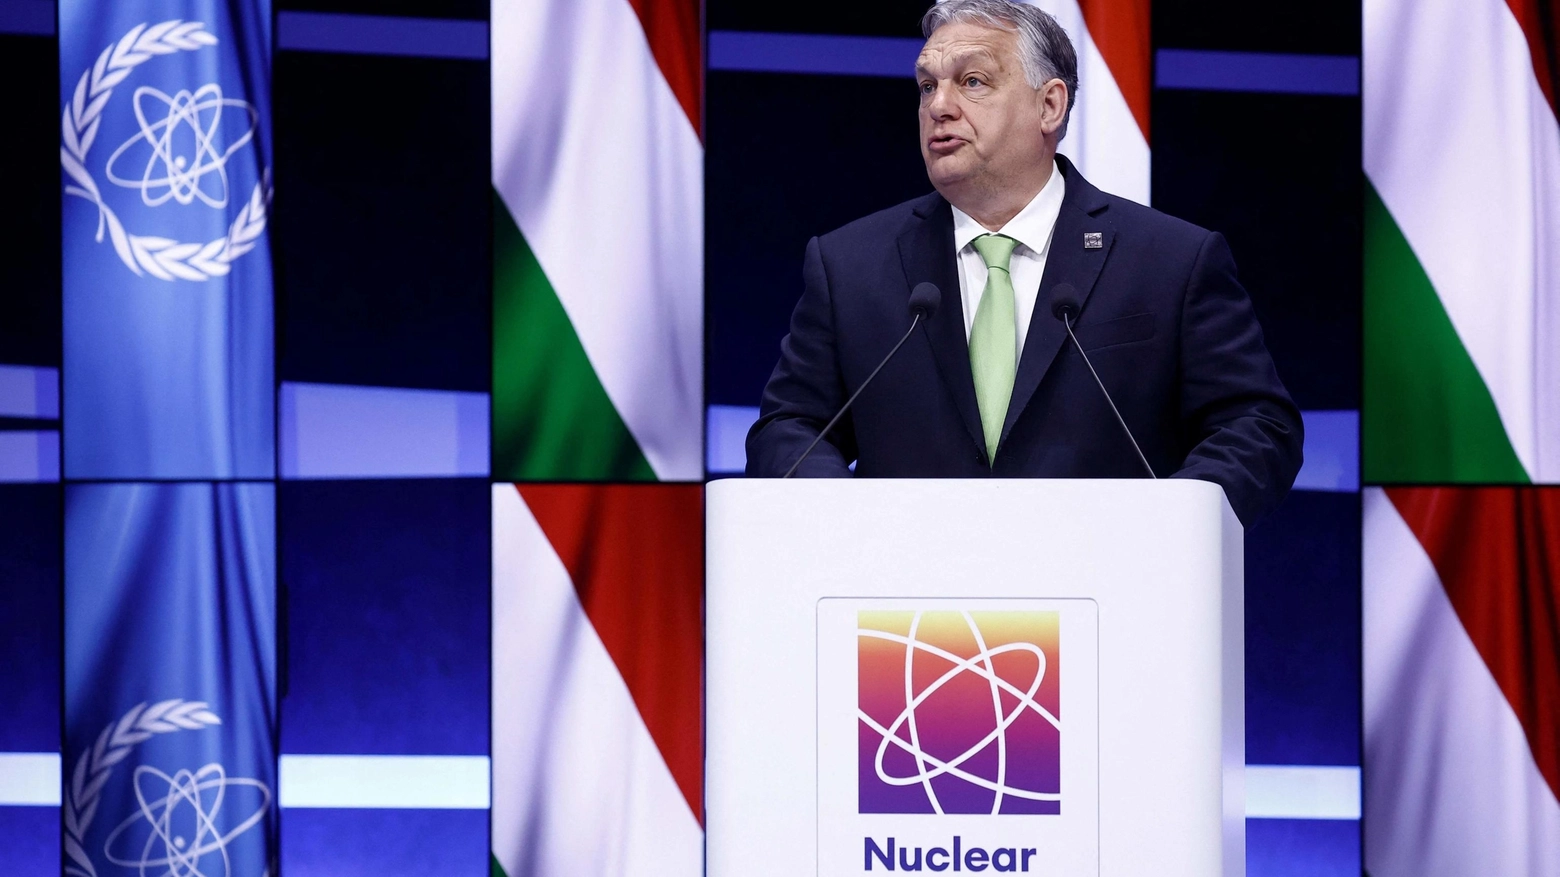 Il primo ministro ungherese “mette in guardia” da iniziative che potrebbero ulteriormente avvicinare l’Occidente a un impegno diretto nella guerra